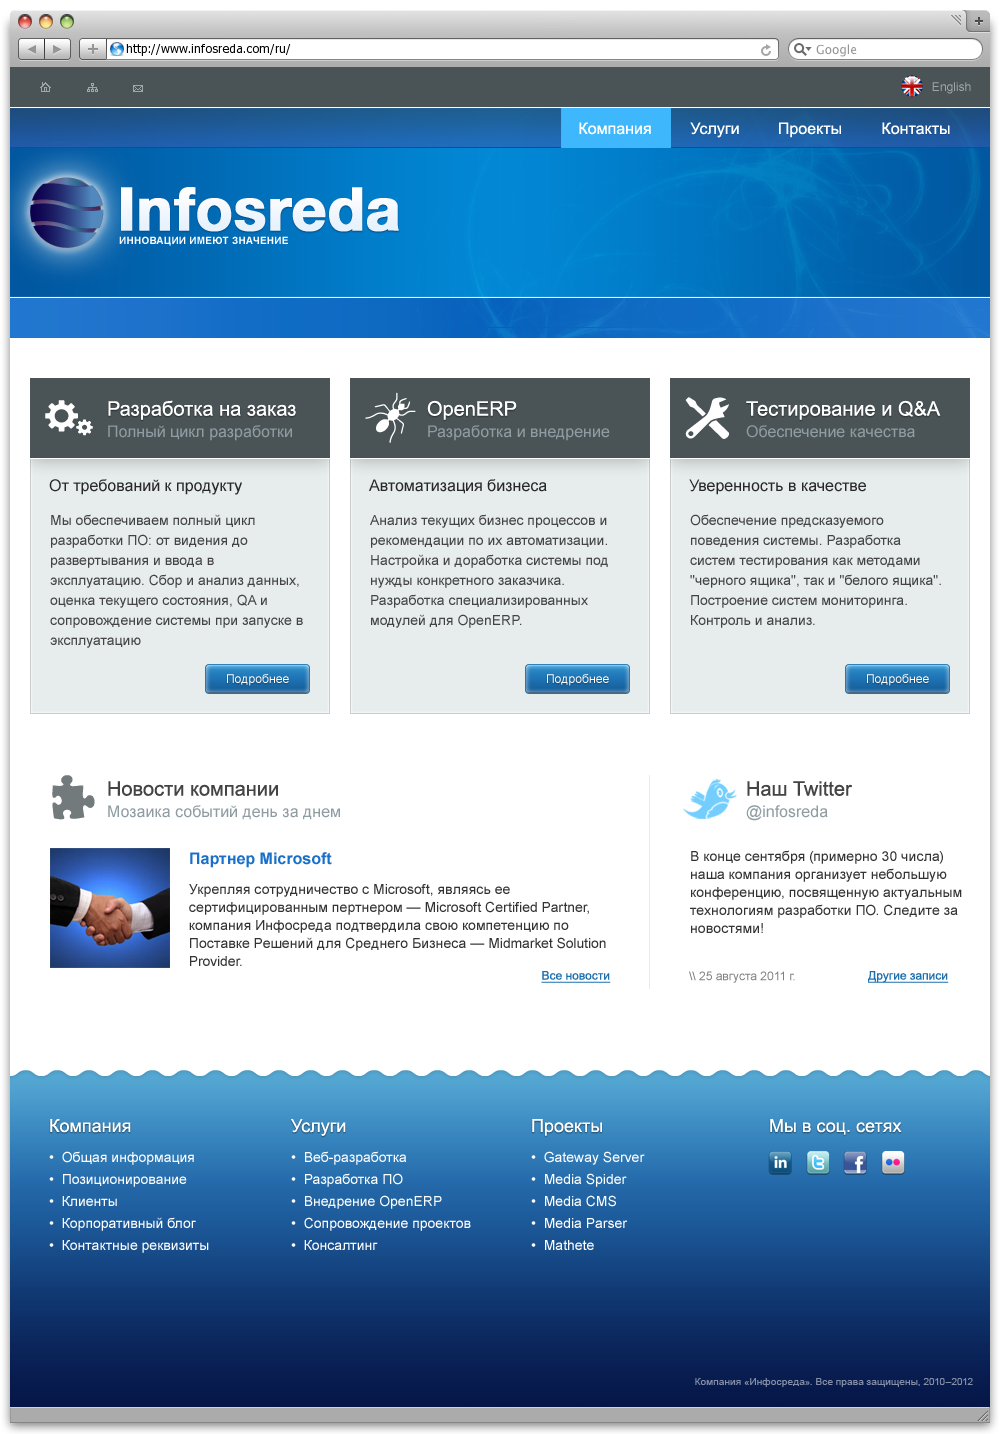 Infosreda.com — Корпоративный сайт